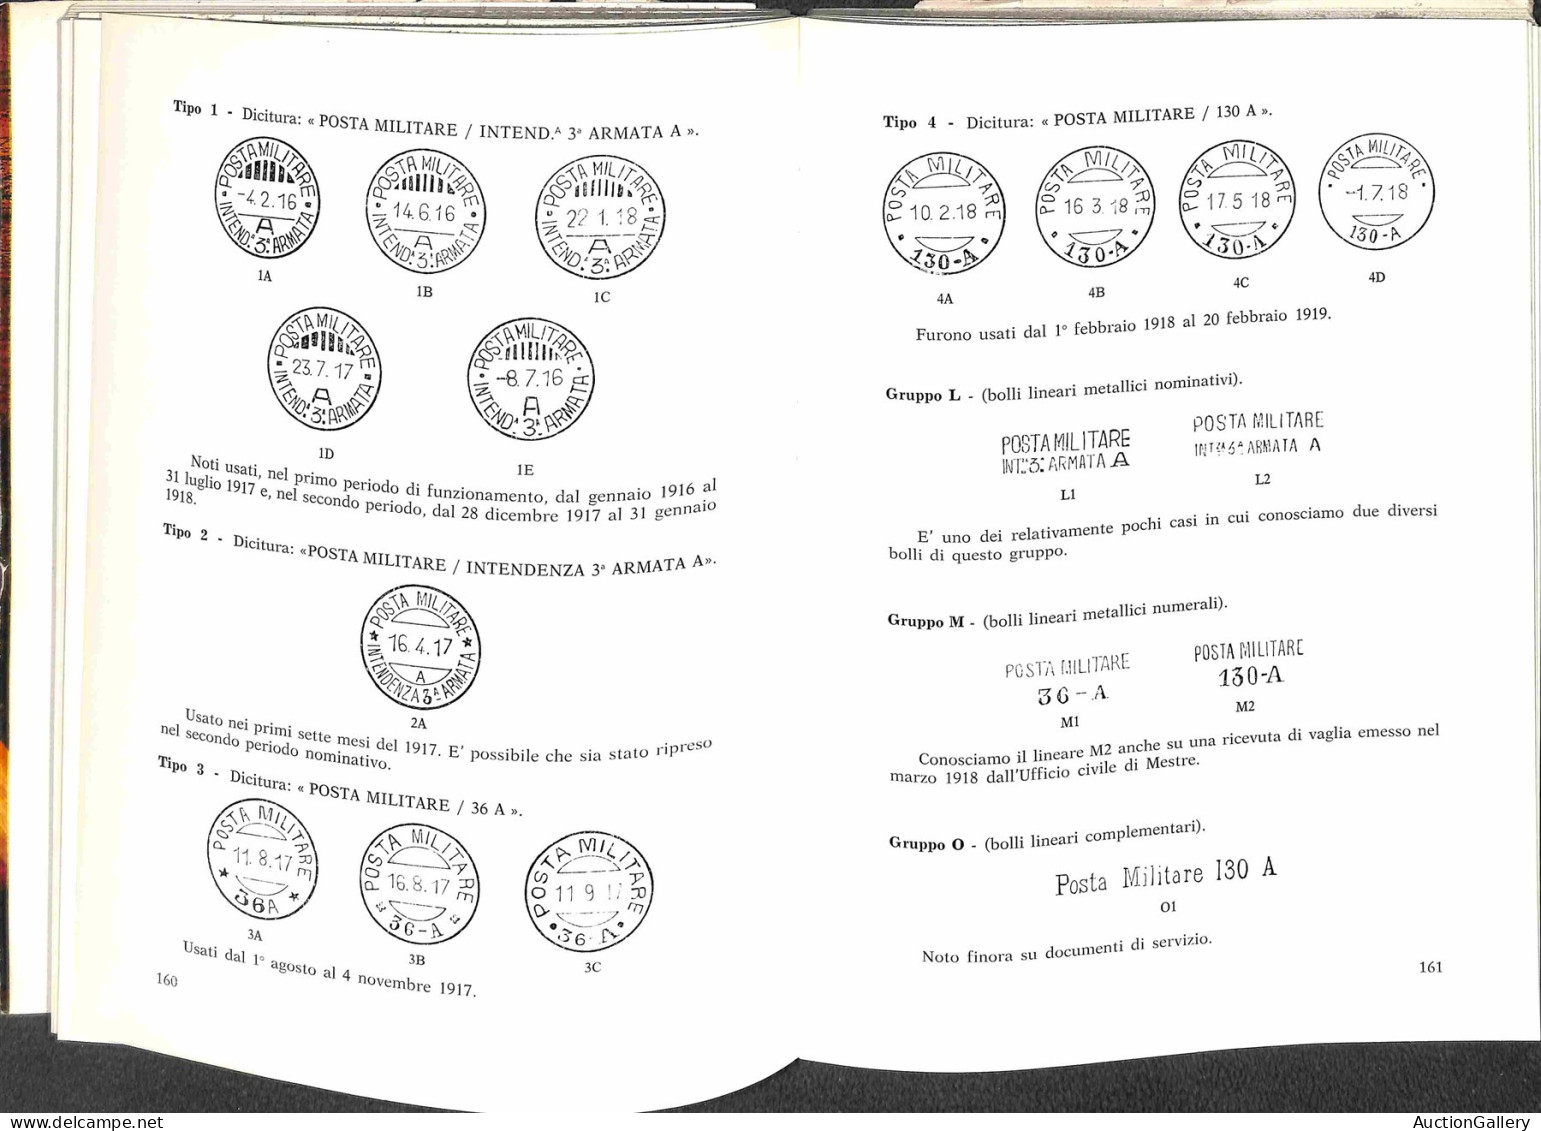 Biblioteca Filatelica - Italia - I Servizi Postali Dell'Esercito Italiano 1915/1923 - B. Cadioli/A. Cecchi - 2 Volumi -  - Otros & Sin Clasificación